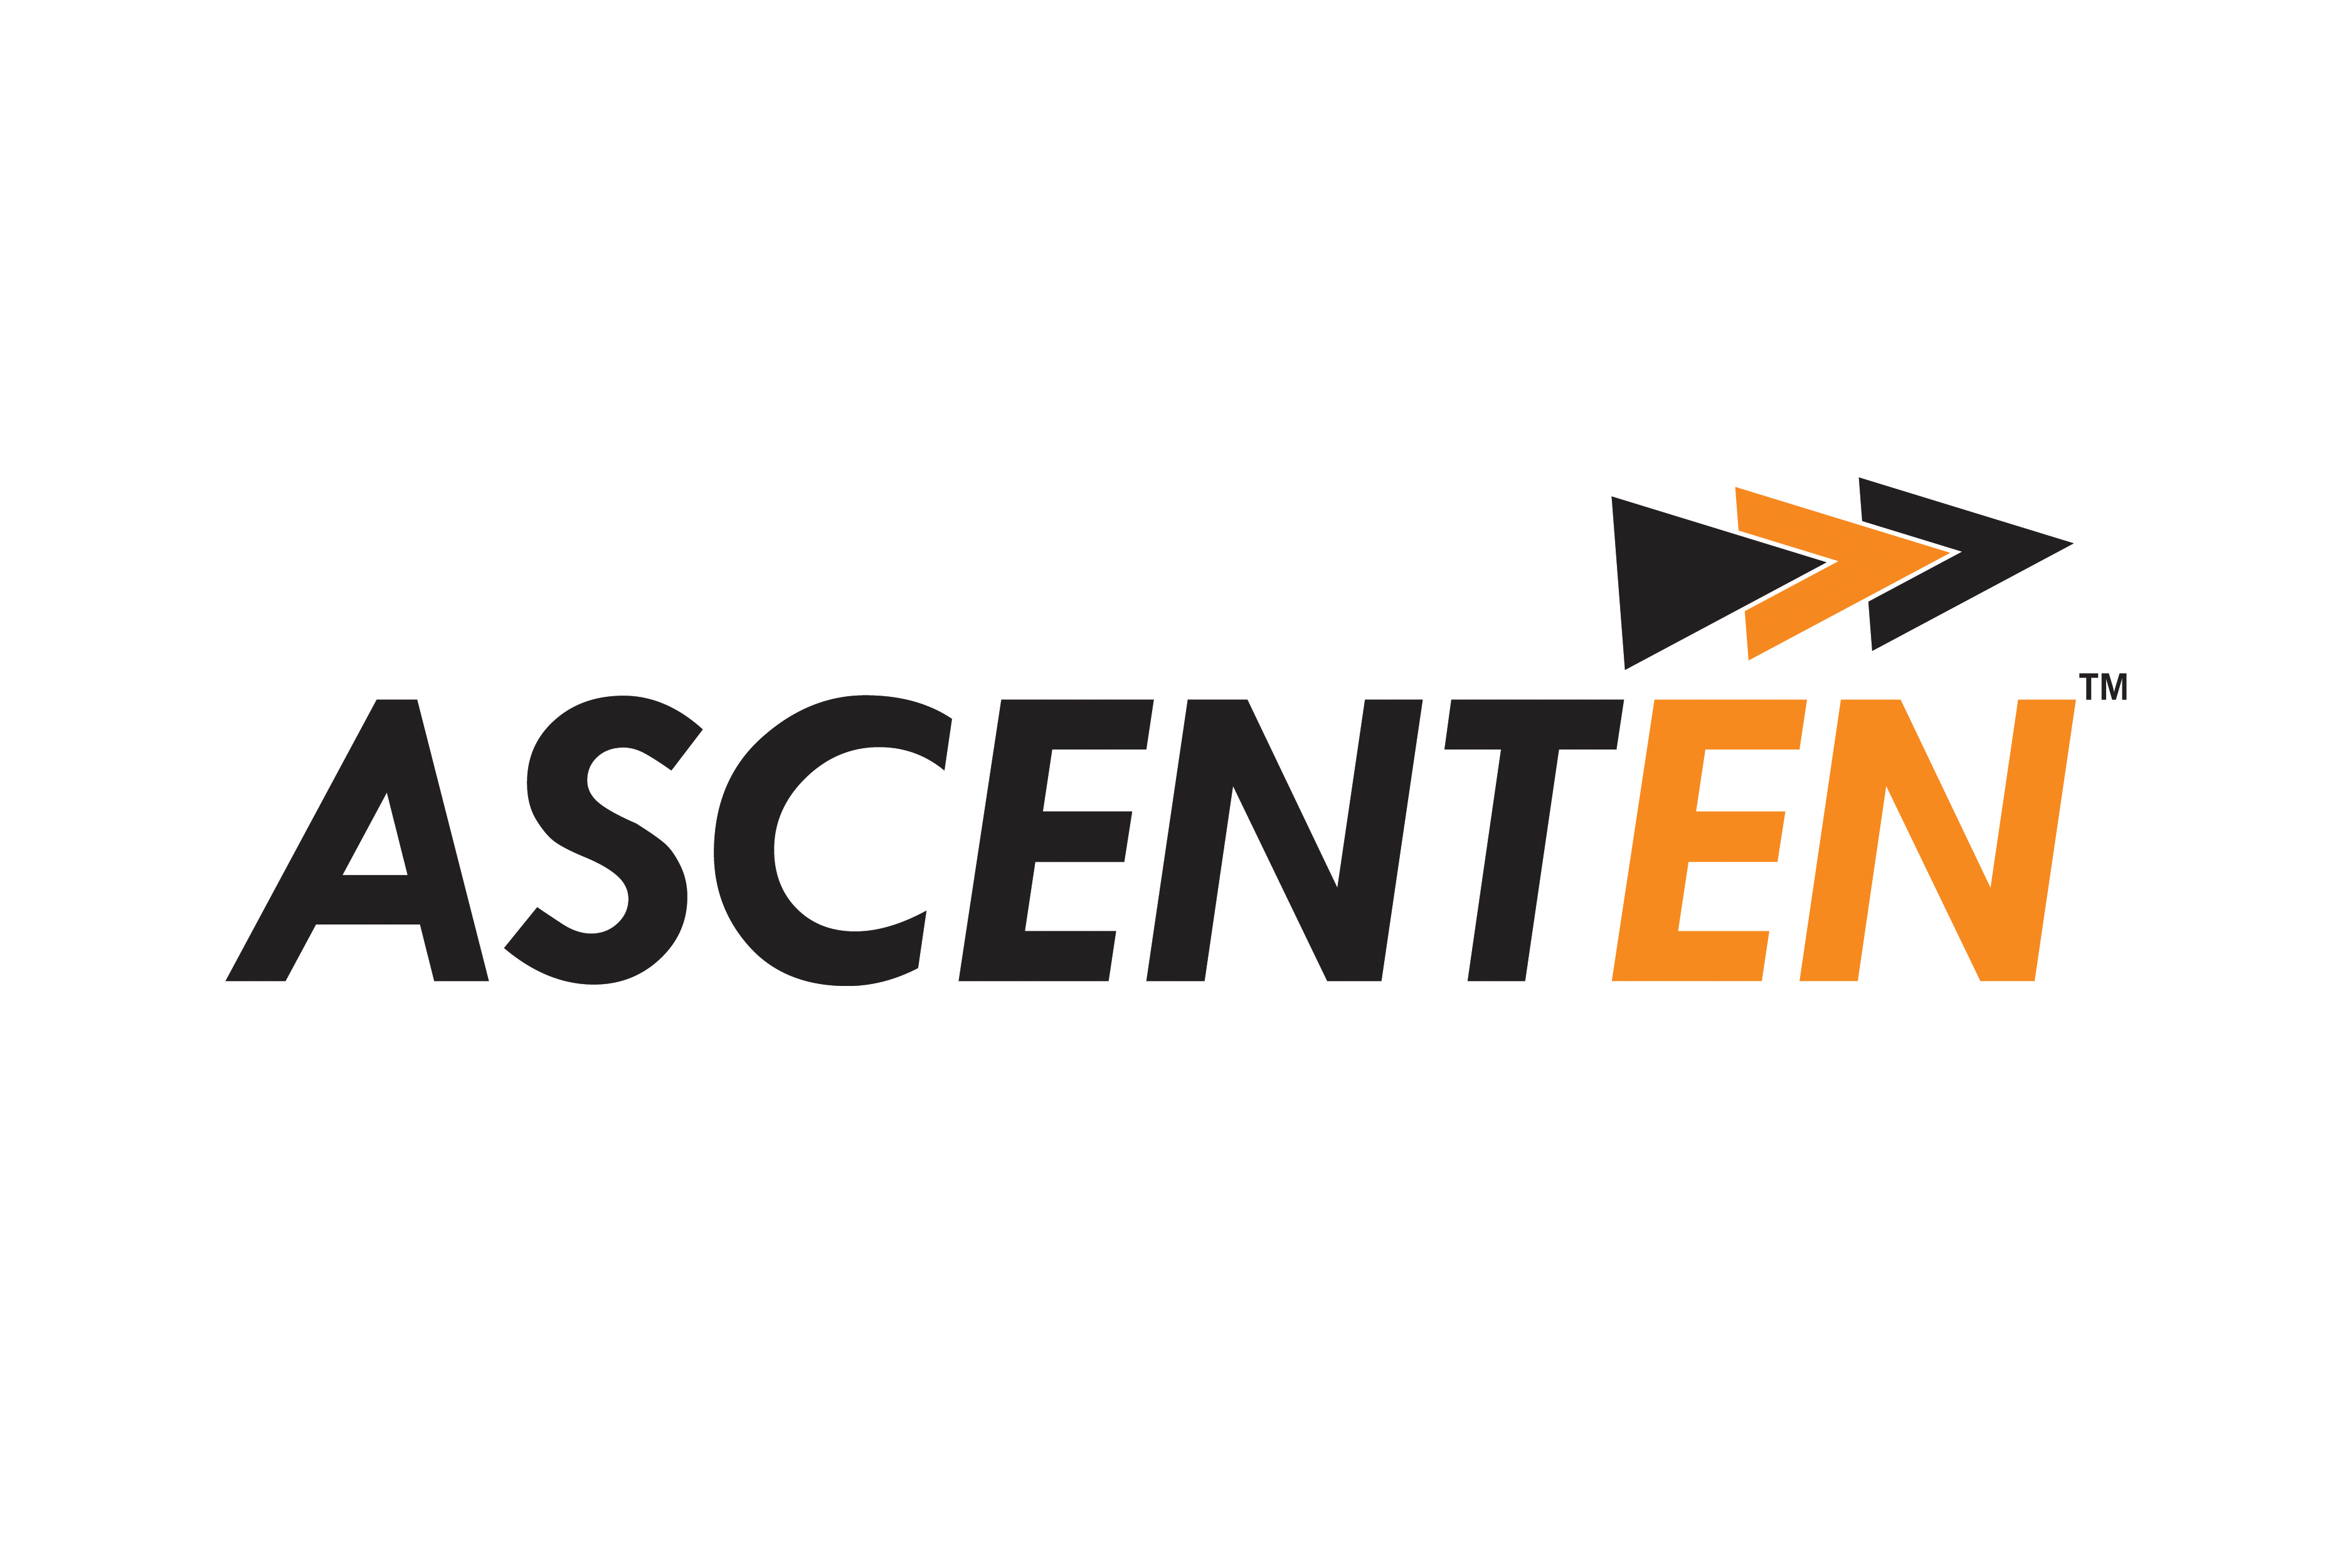 Ascenten Technologies